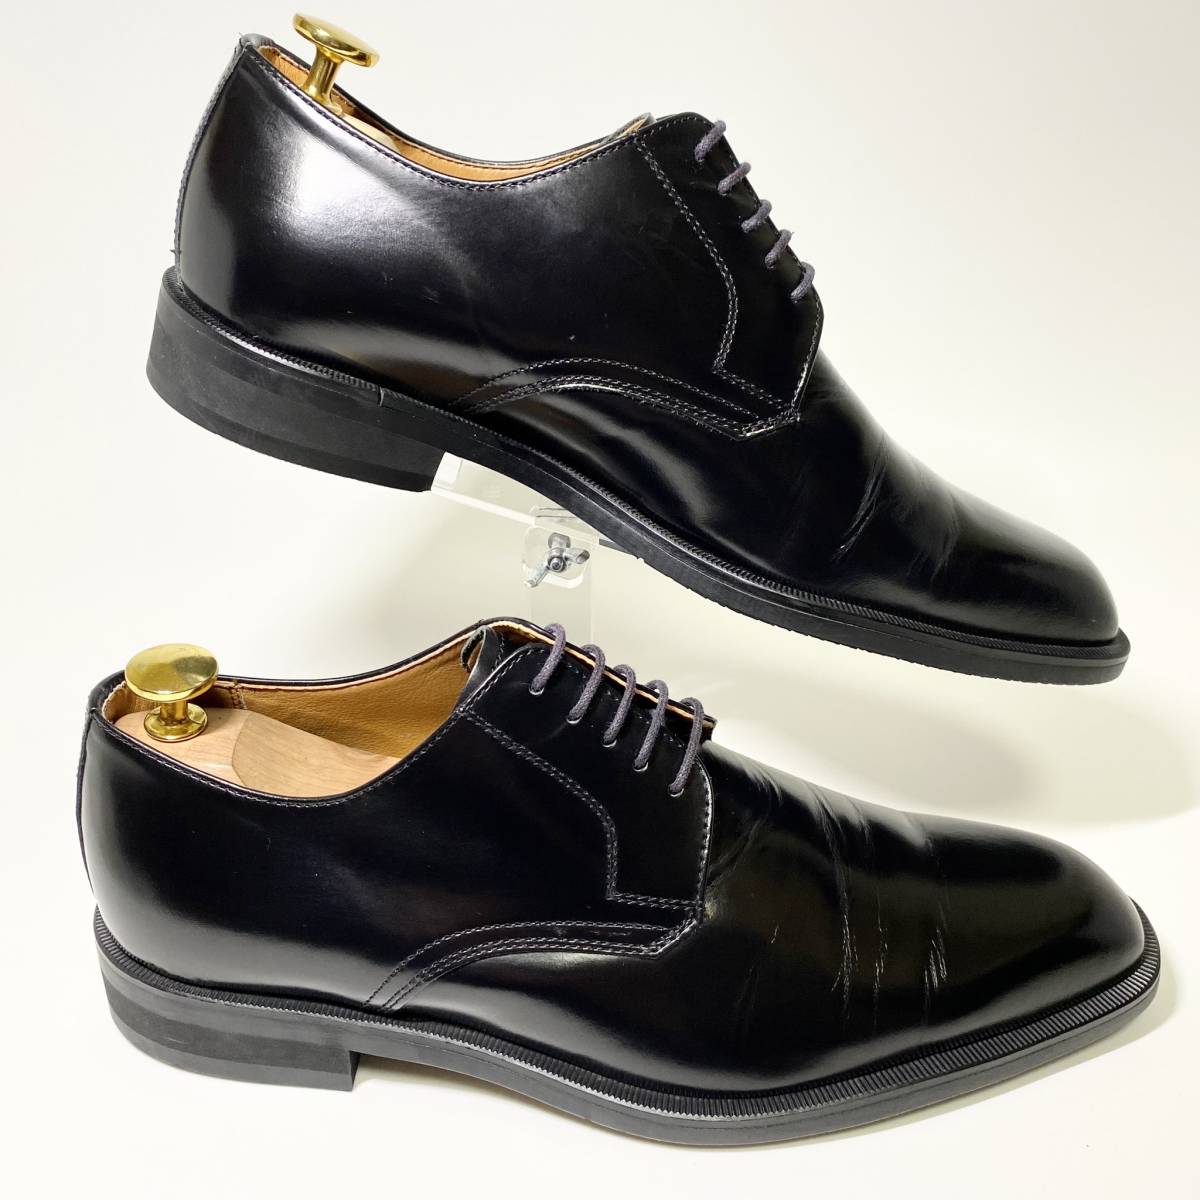 【REGAL LOYD&HAIG】リーガル ロイド&ヘイグ 24.5cm 黒 ブラック プレーントウ 外羽 革靴 メンズ ビジネスシューズ レザー 紳士靴 L&H_画像4